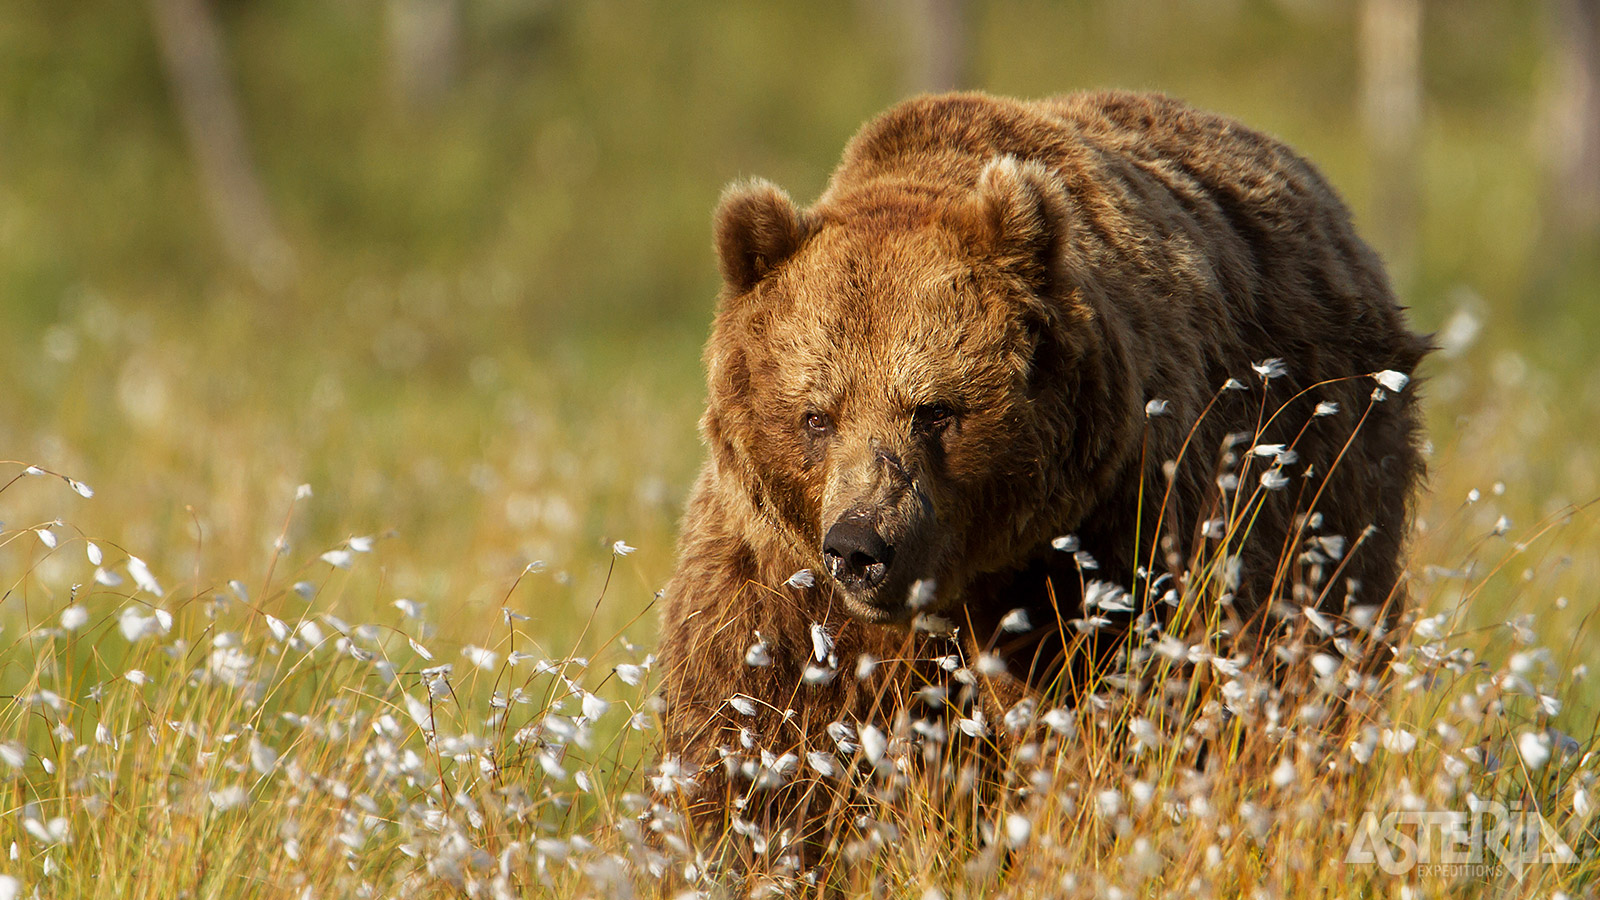 Tijdens een facultatieve excursie kan je bruine beren in hun natuurlijk habitat observeren en fotograferen